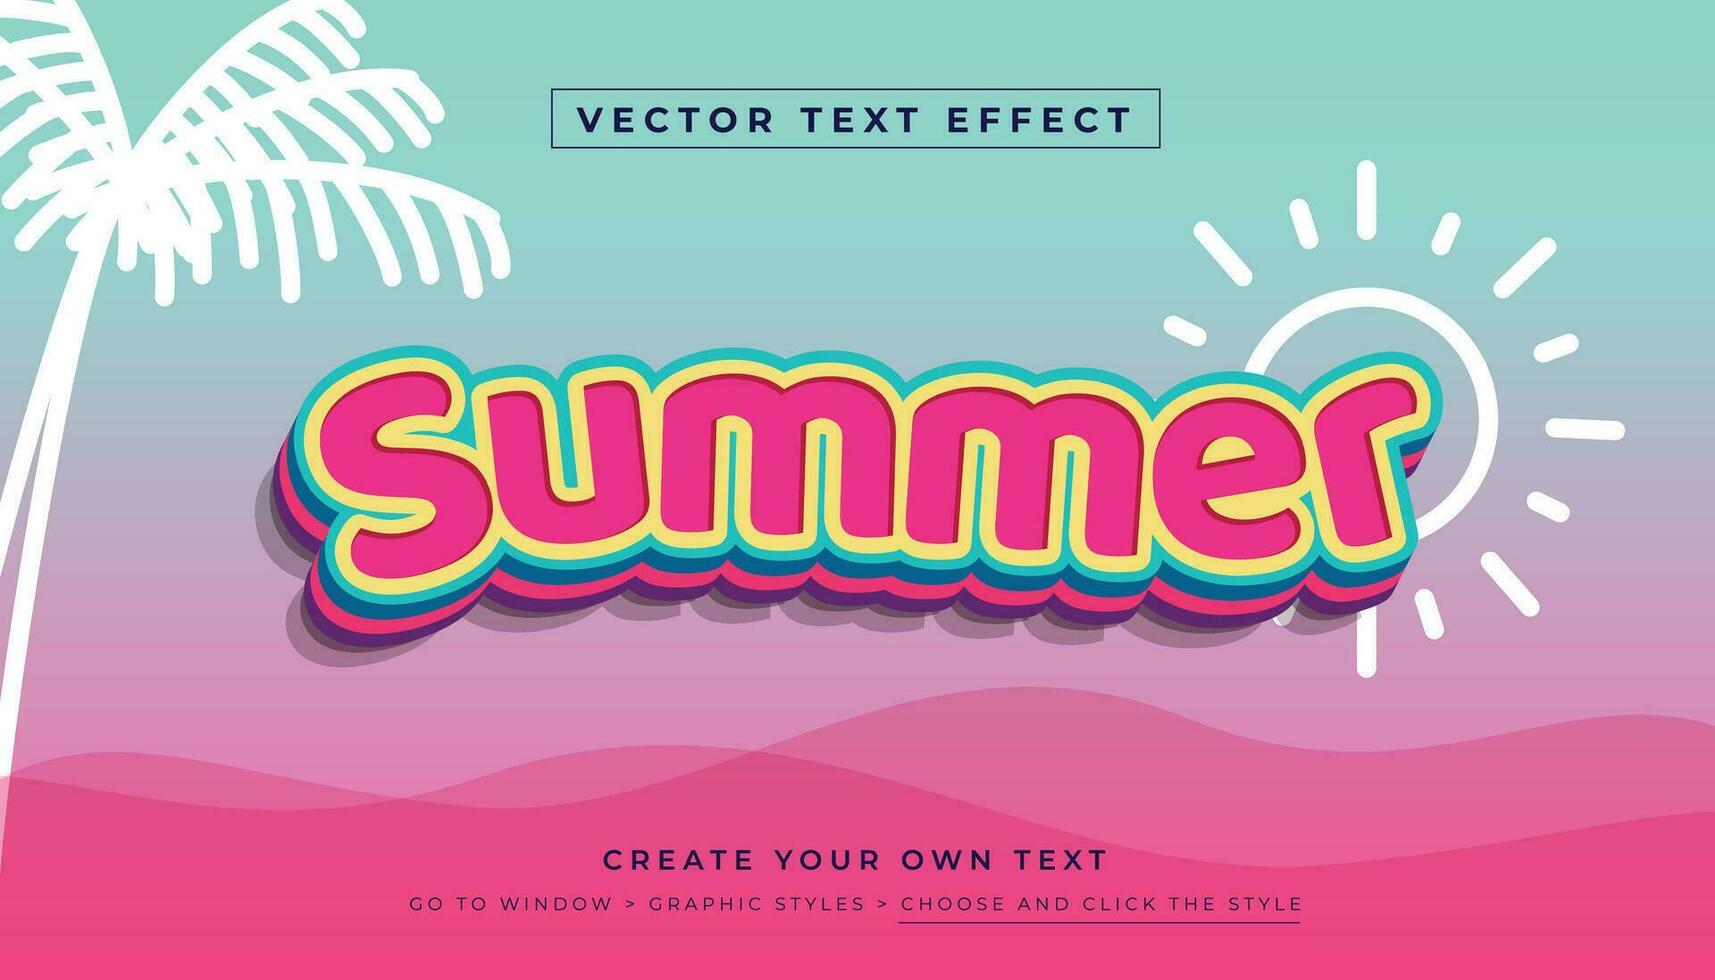 editable vector 3d rosado verano texto efecto. playa fiesta gráfico estilo